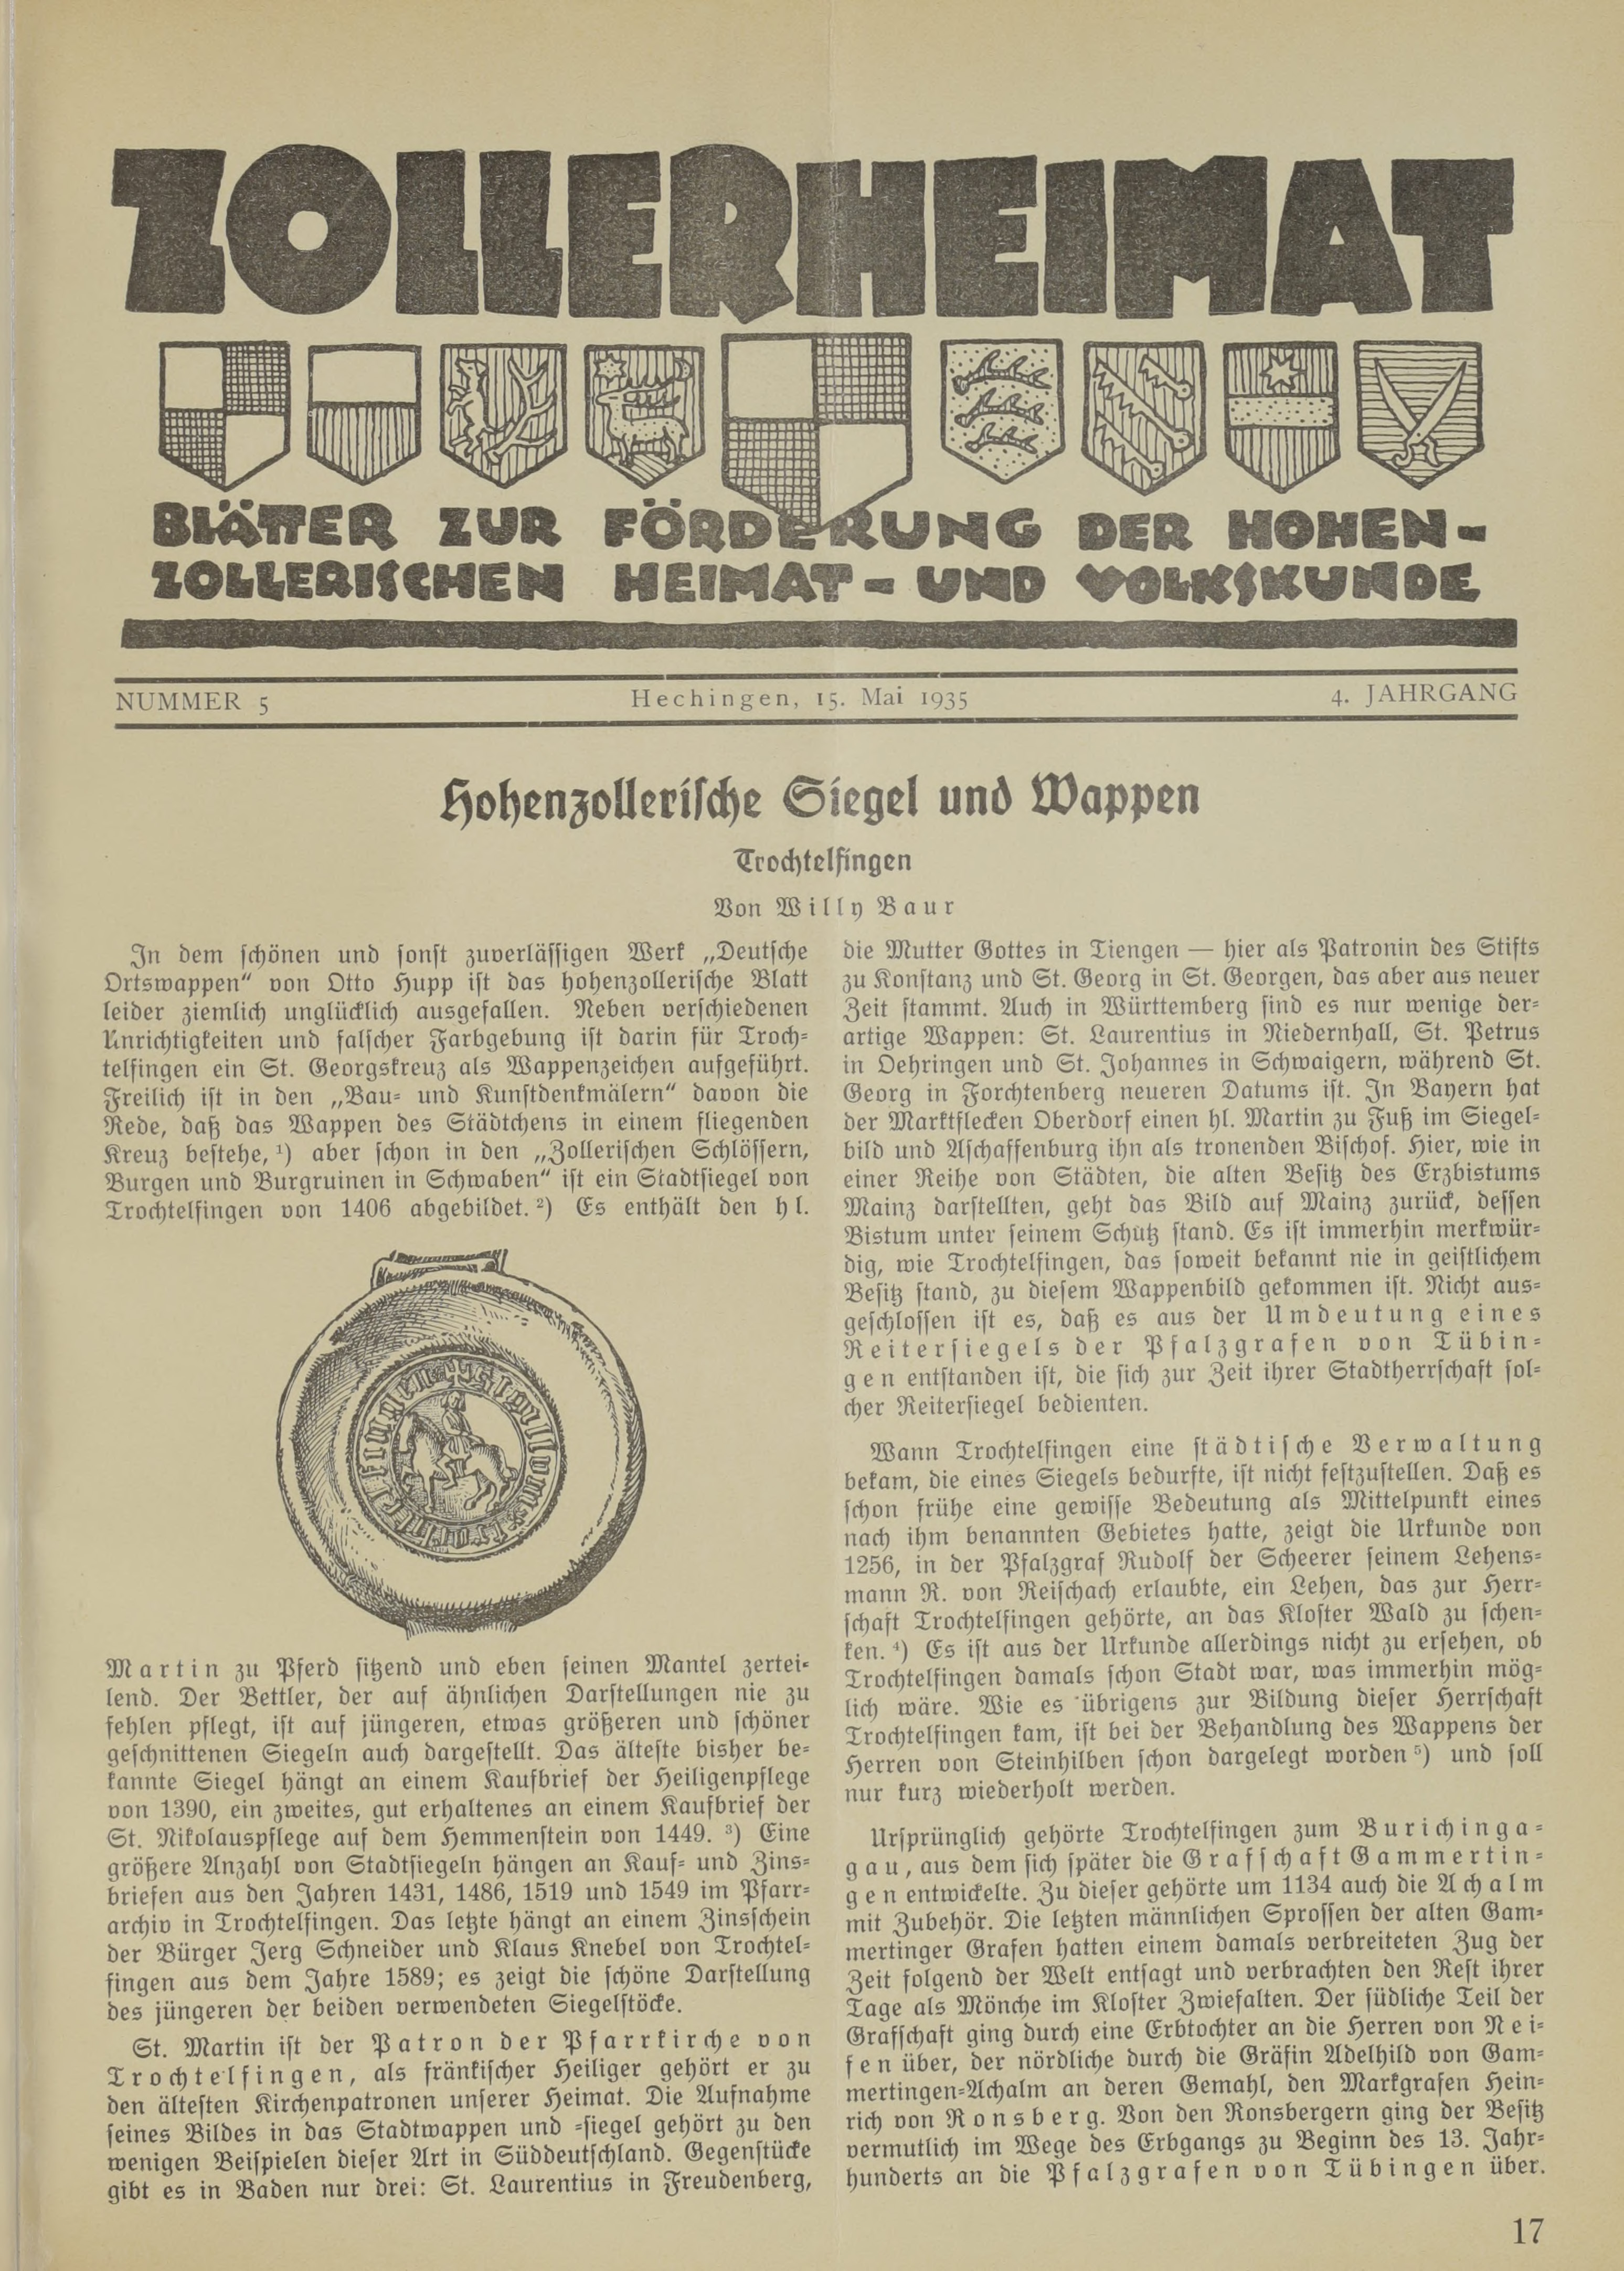                     Ansehen Bd. 4 Nr. 5 (1935): Zollerheimat
                